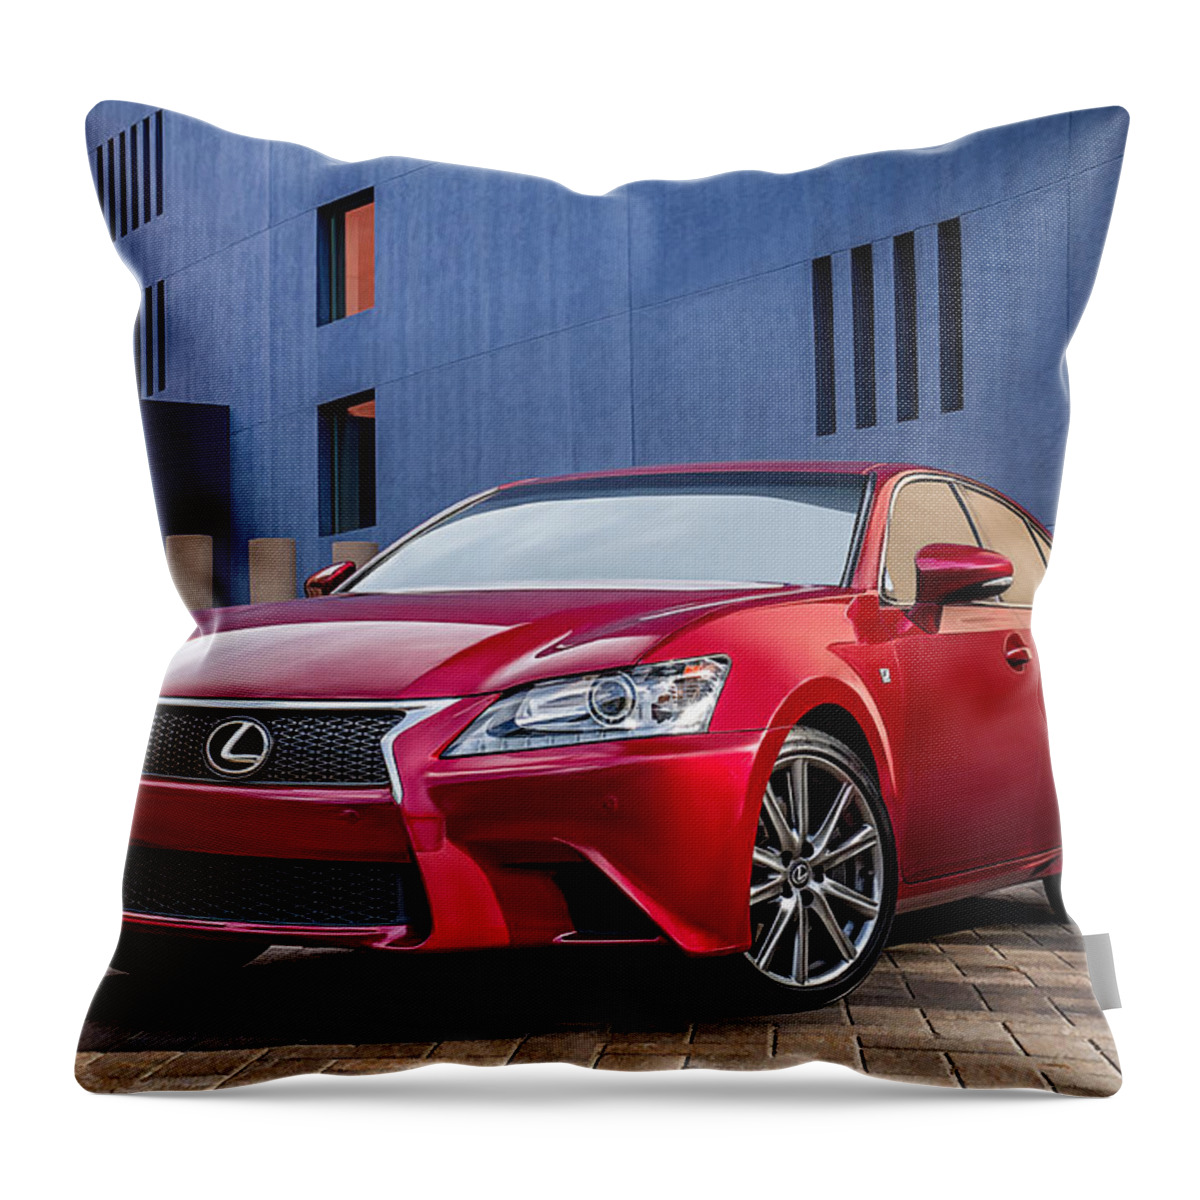 Lexus Throw Pillow featuring the digital art Lexus GS350 F Sport by Douglas Pittman